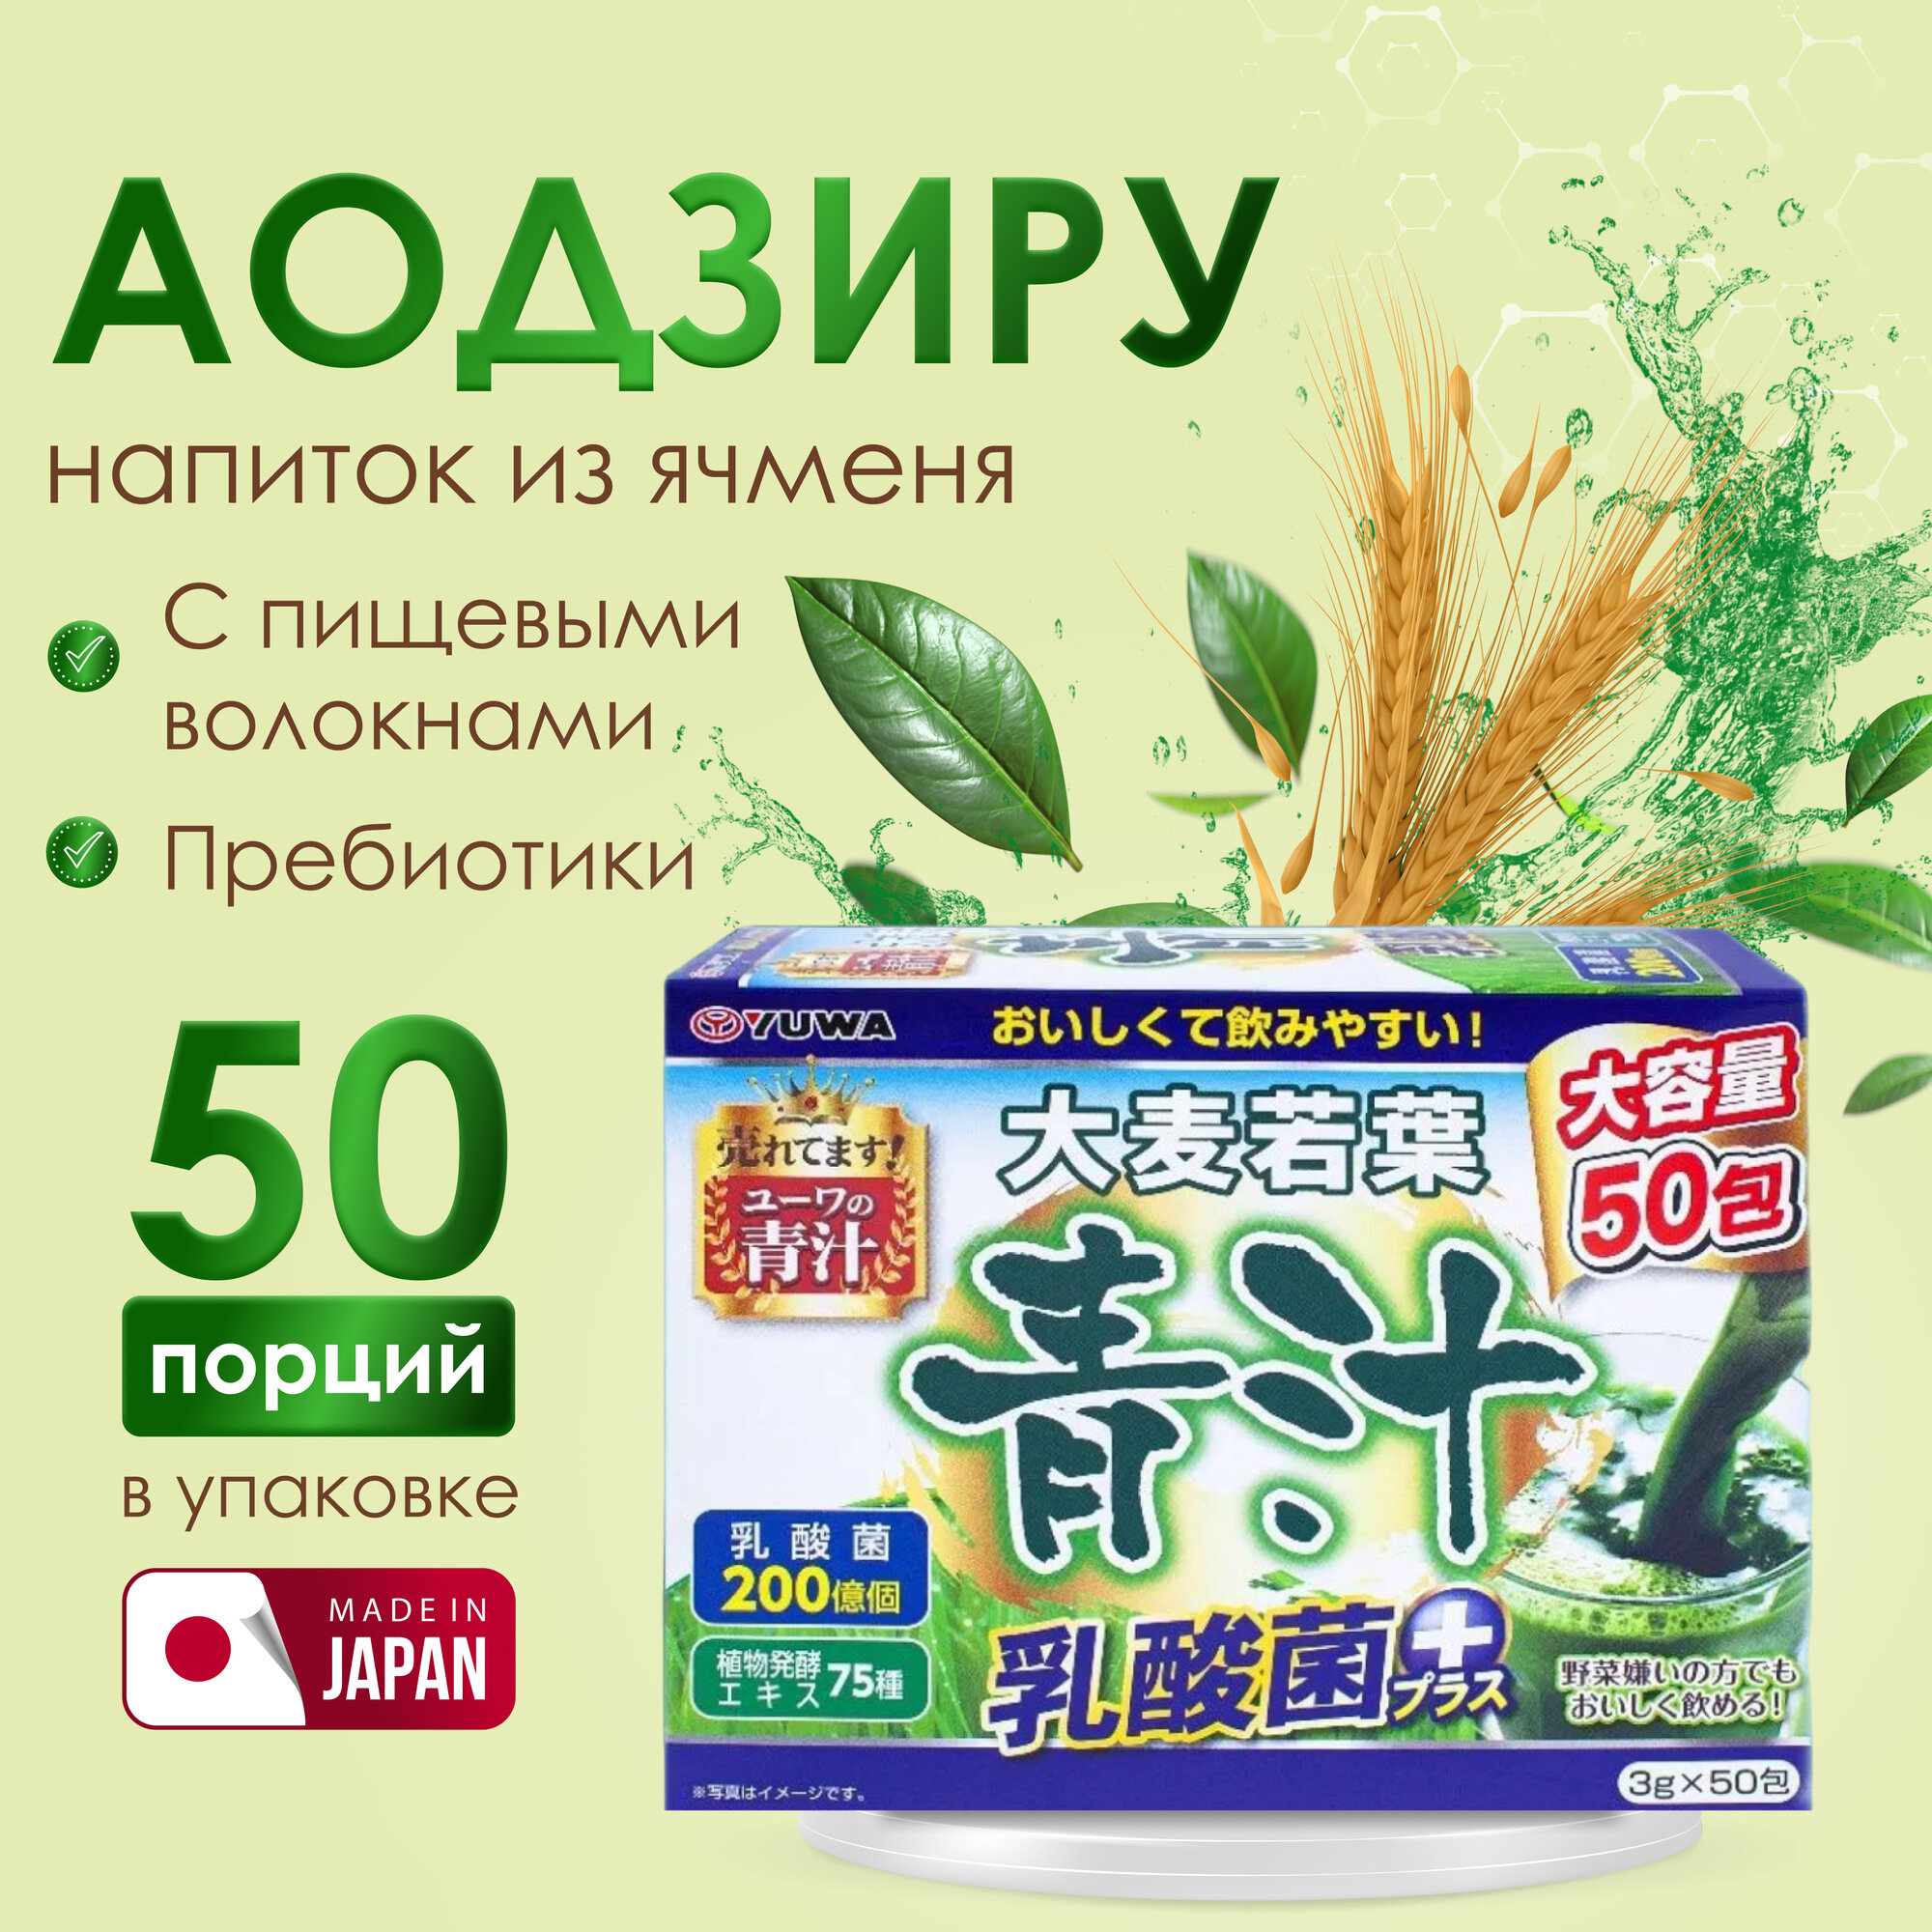 Yuwa Японский ячменный витаминный напиток с пищевыми волокнами Аодзиру классический (50 саше по 3 гр) витамины для иммунитета и очищения организма и похудения, Япония